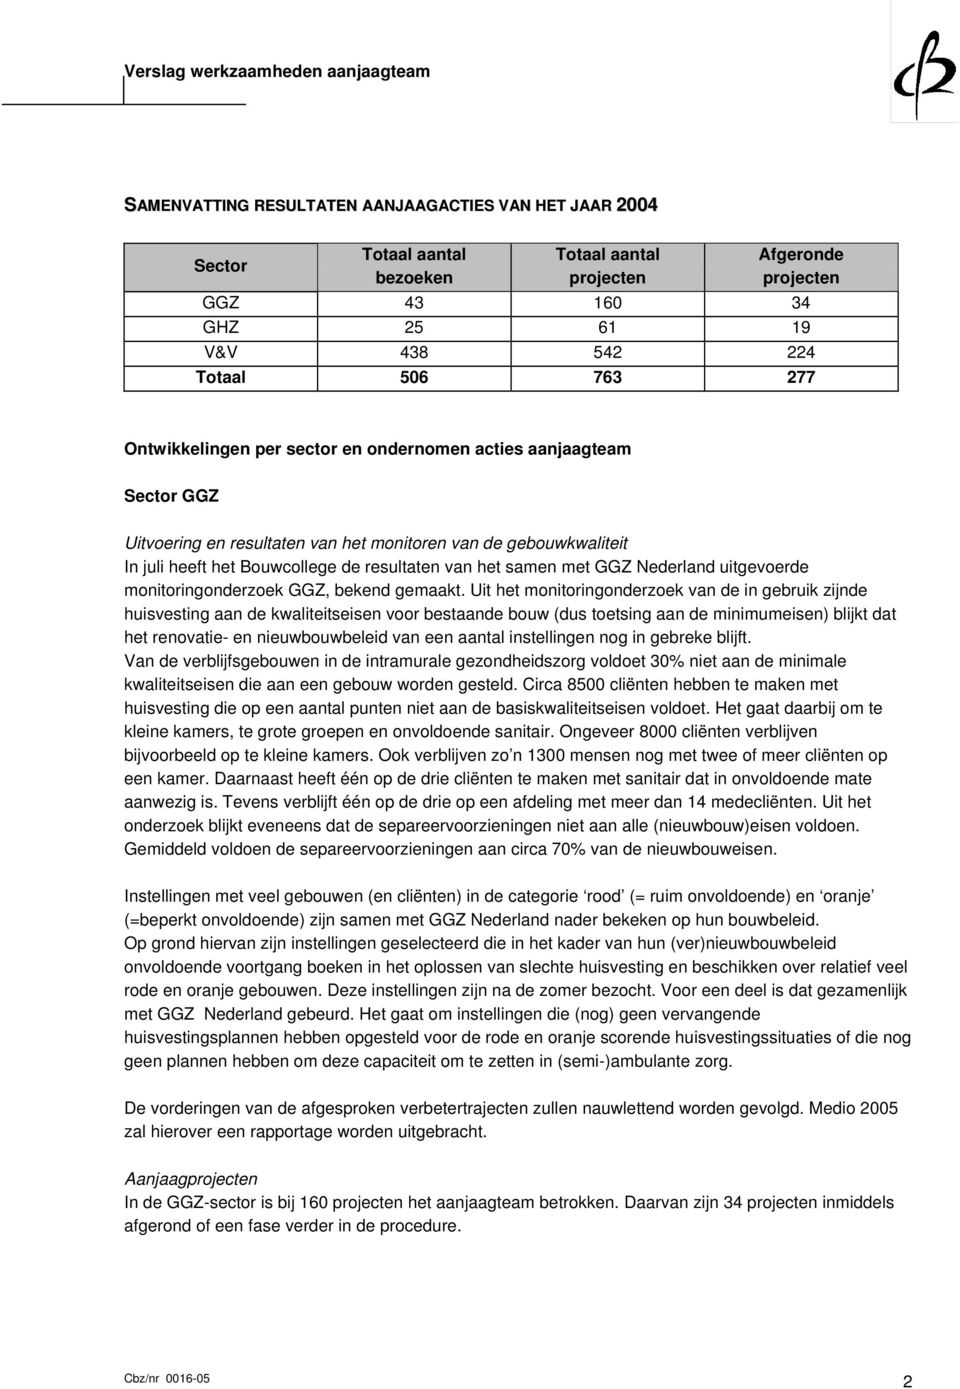 GGZ Nederland uitgevoerde monitoringonderzoek GGZ, bekend gemaakt.